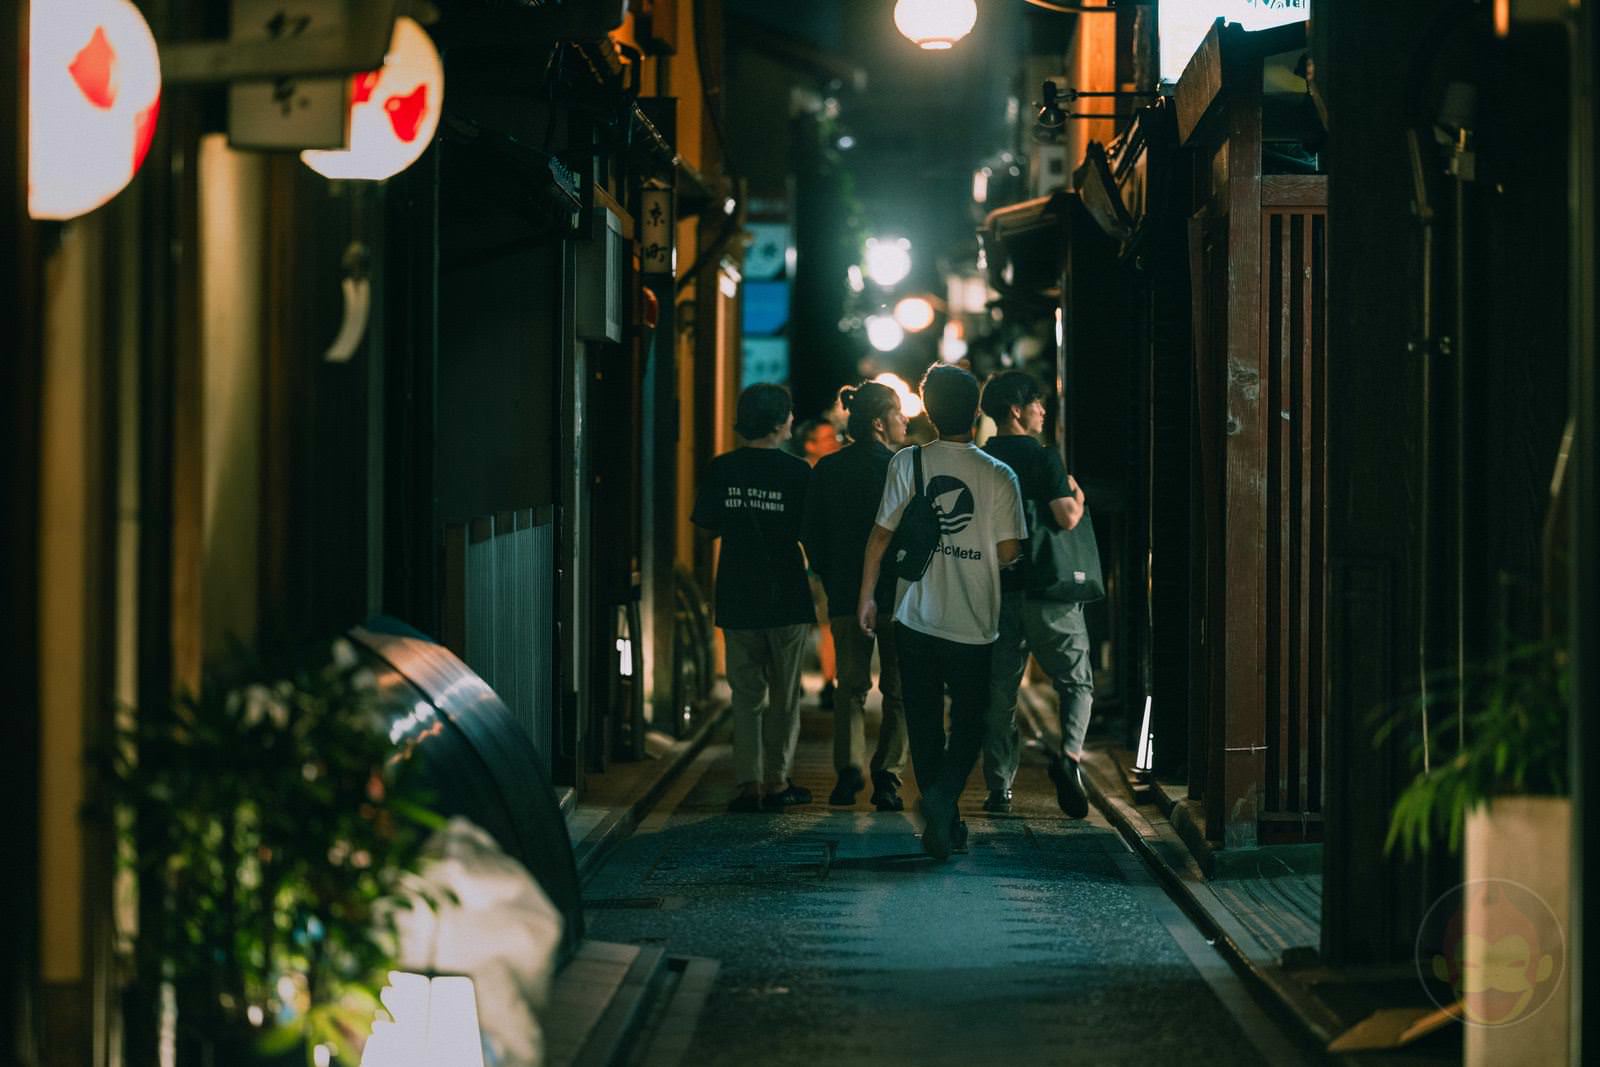 Kyoto Street Snap at midnight 11